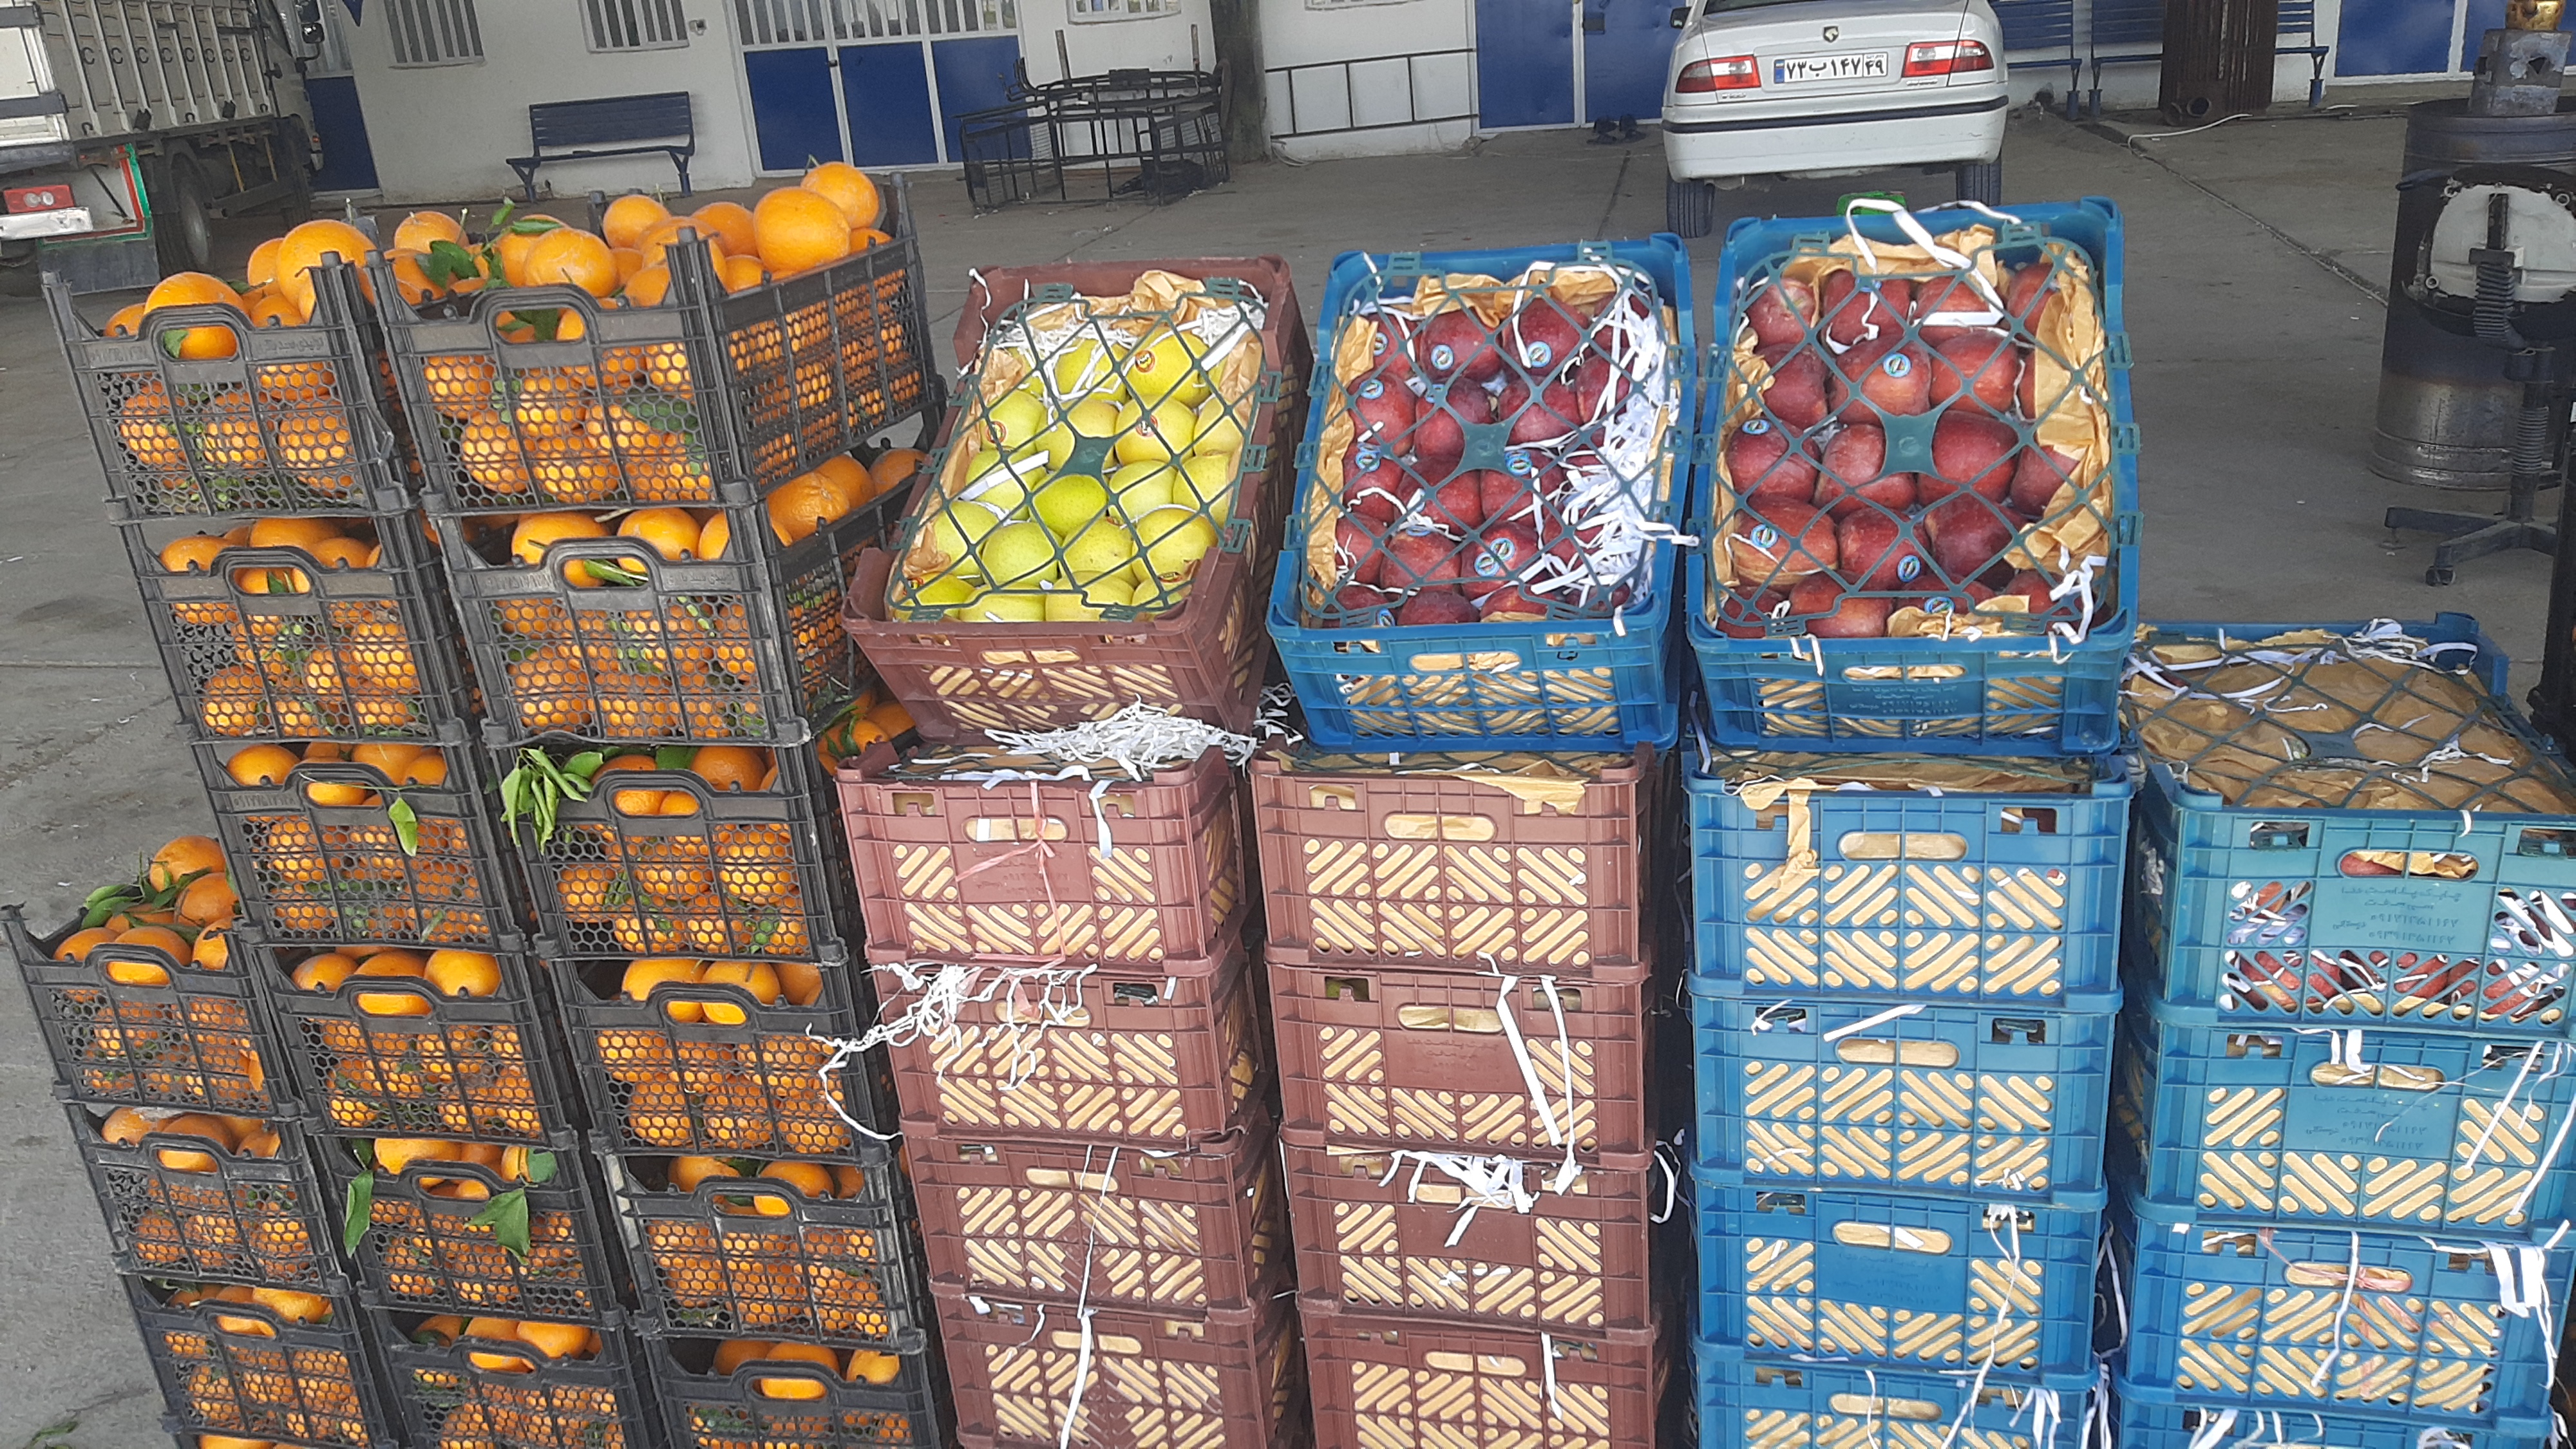 بازار عجیب میوه شب عید در یاسوج؛ از خرده فروشی که برای عمده فروش نرخ تعیین می کند تا مافیایی که در نبود نظارت علیه بازار تره بار است!